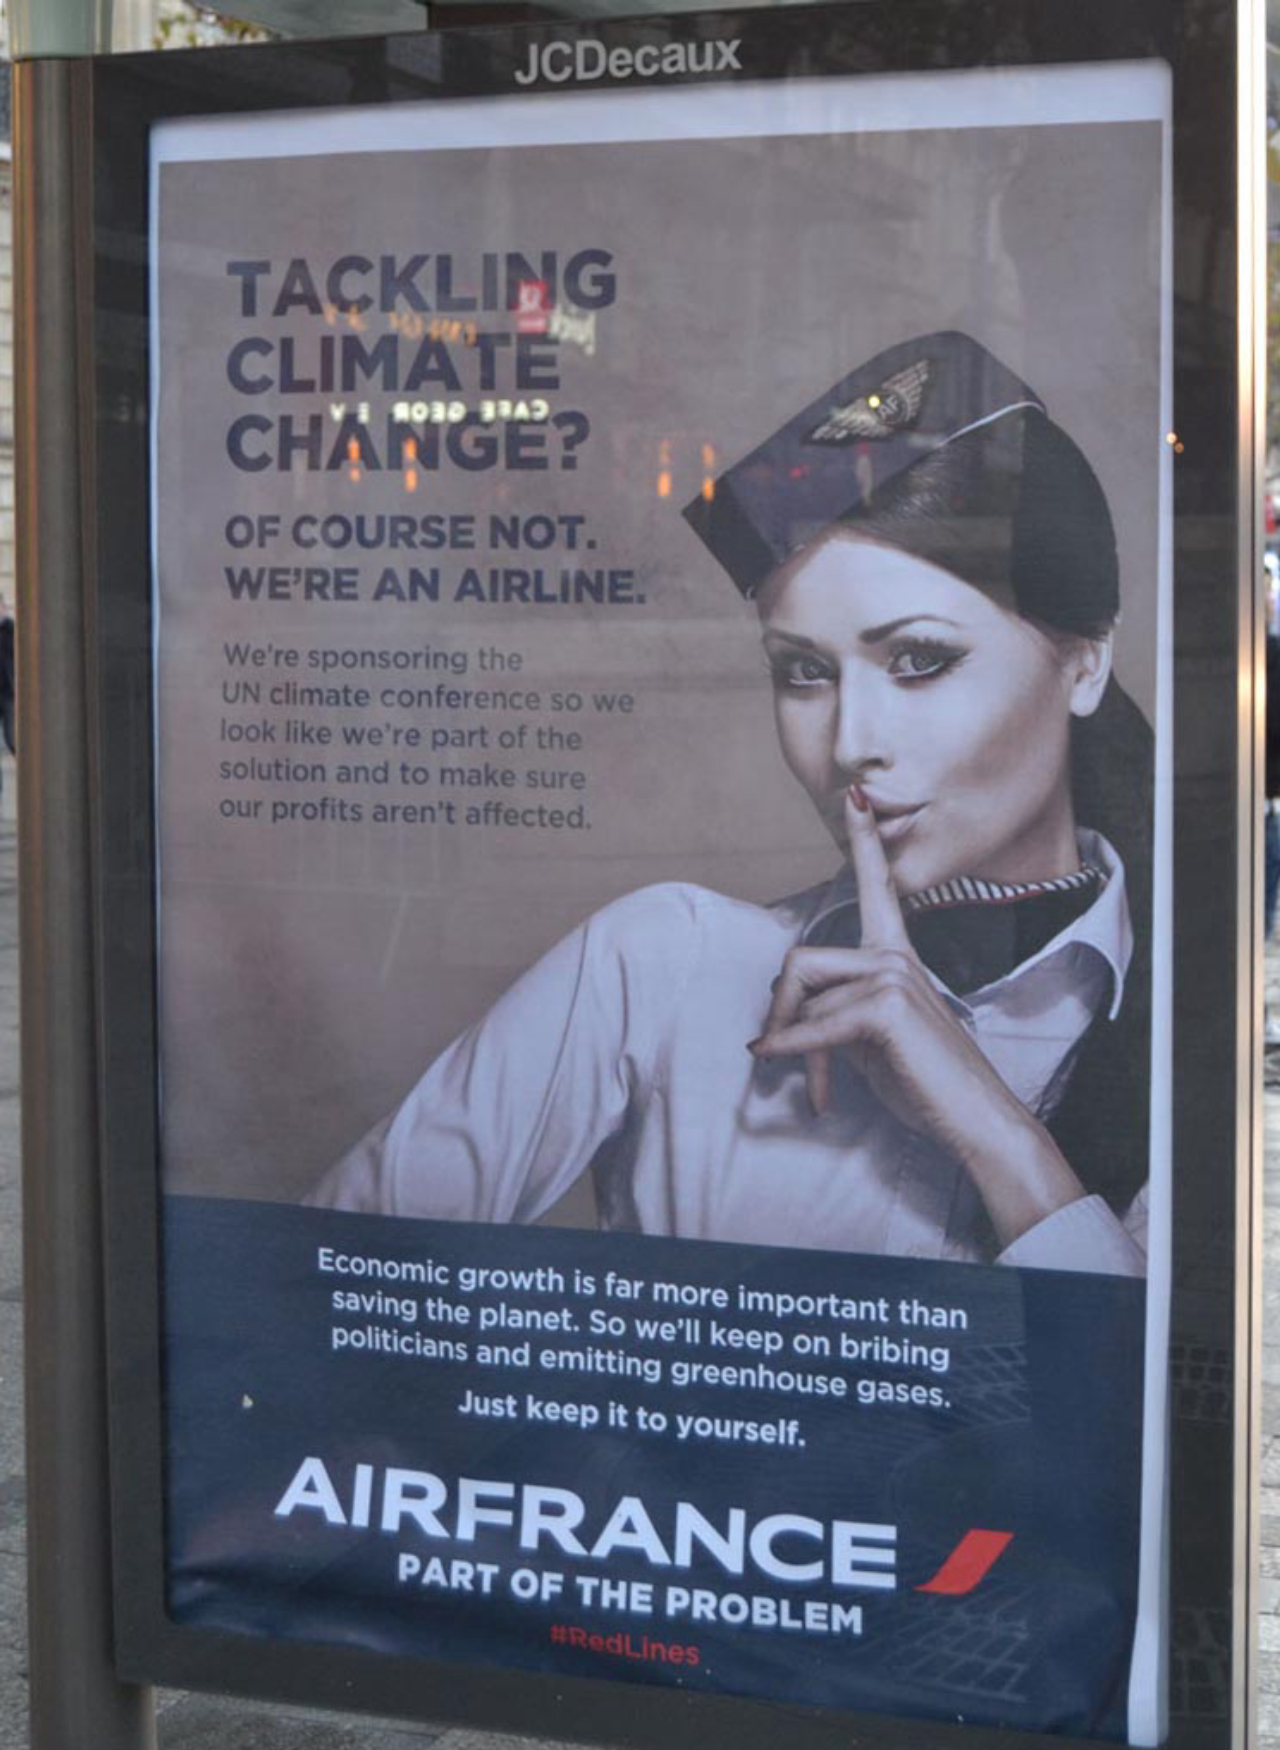 Anúncio parodiado da empresa Air France, que é trazida pelo grupo como "parte do problema". “Combatendo as mudanças climáticas? Claro que não, somos uma companhia aérea”. Imagem: Brandalism, arte de Revolt Design.